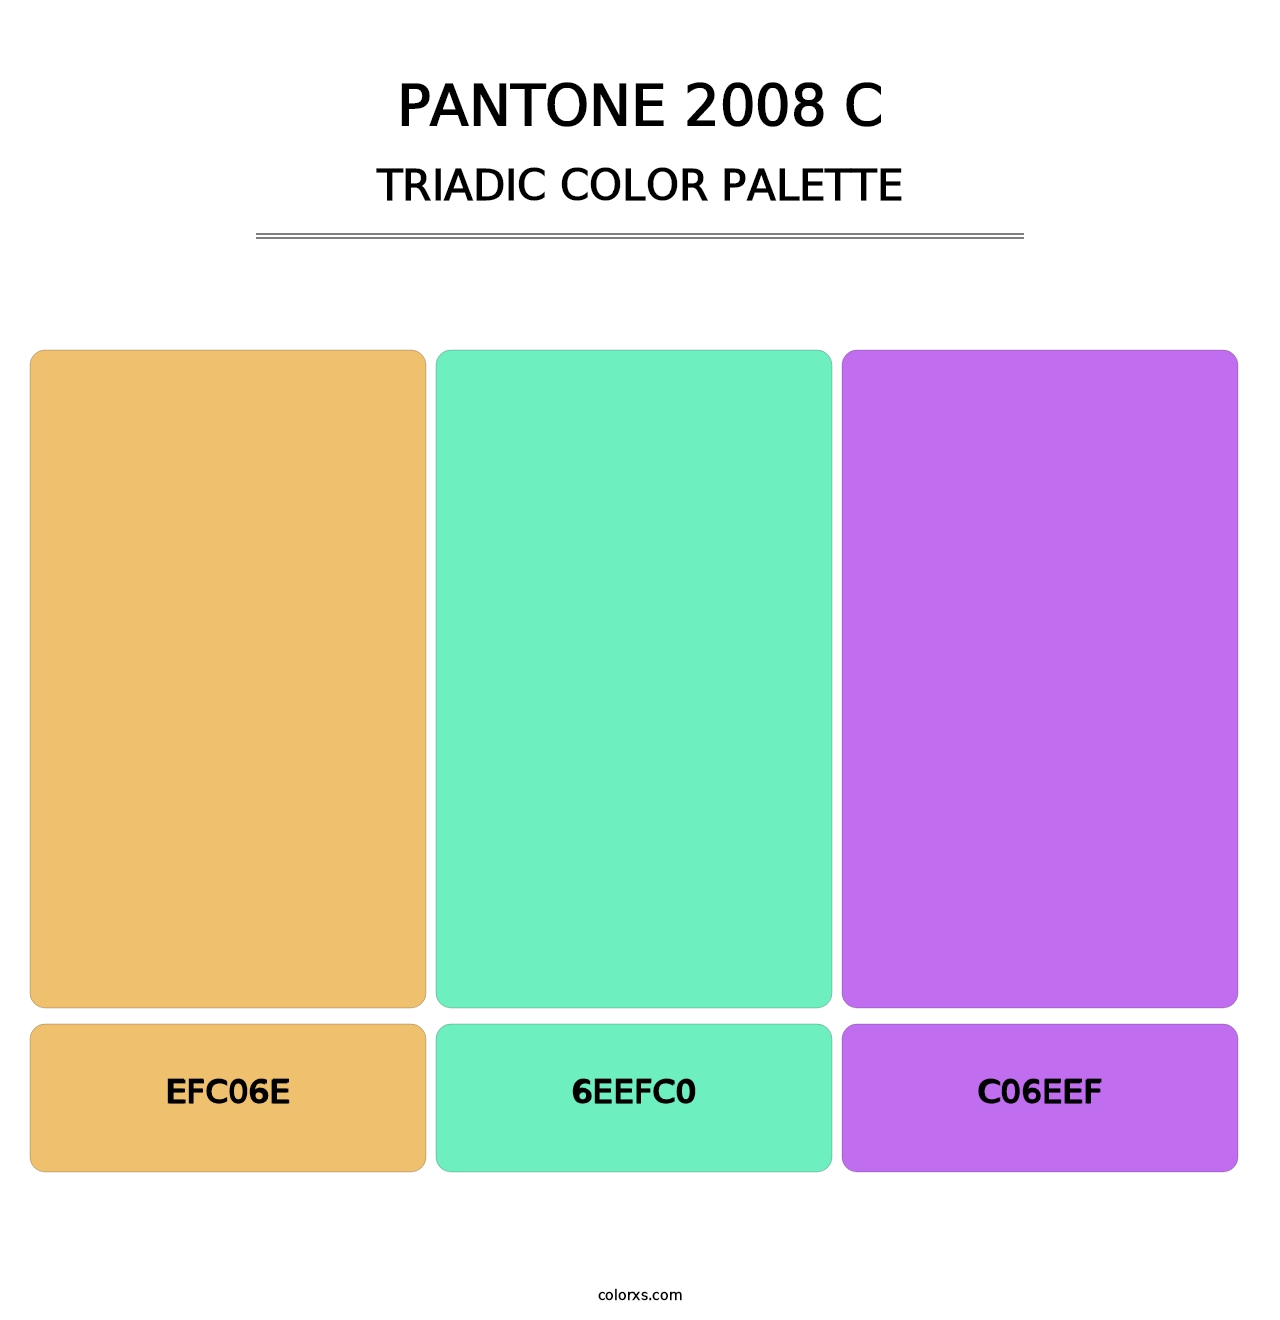 PANTONE 2008 C - Triadic Color Palette